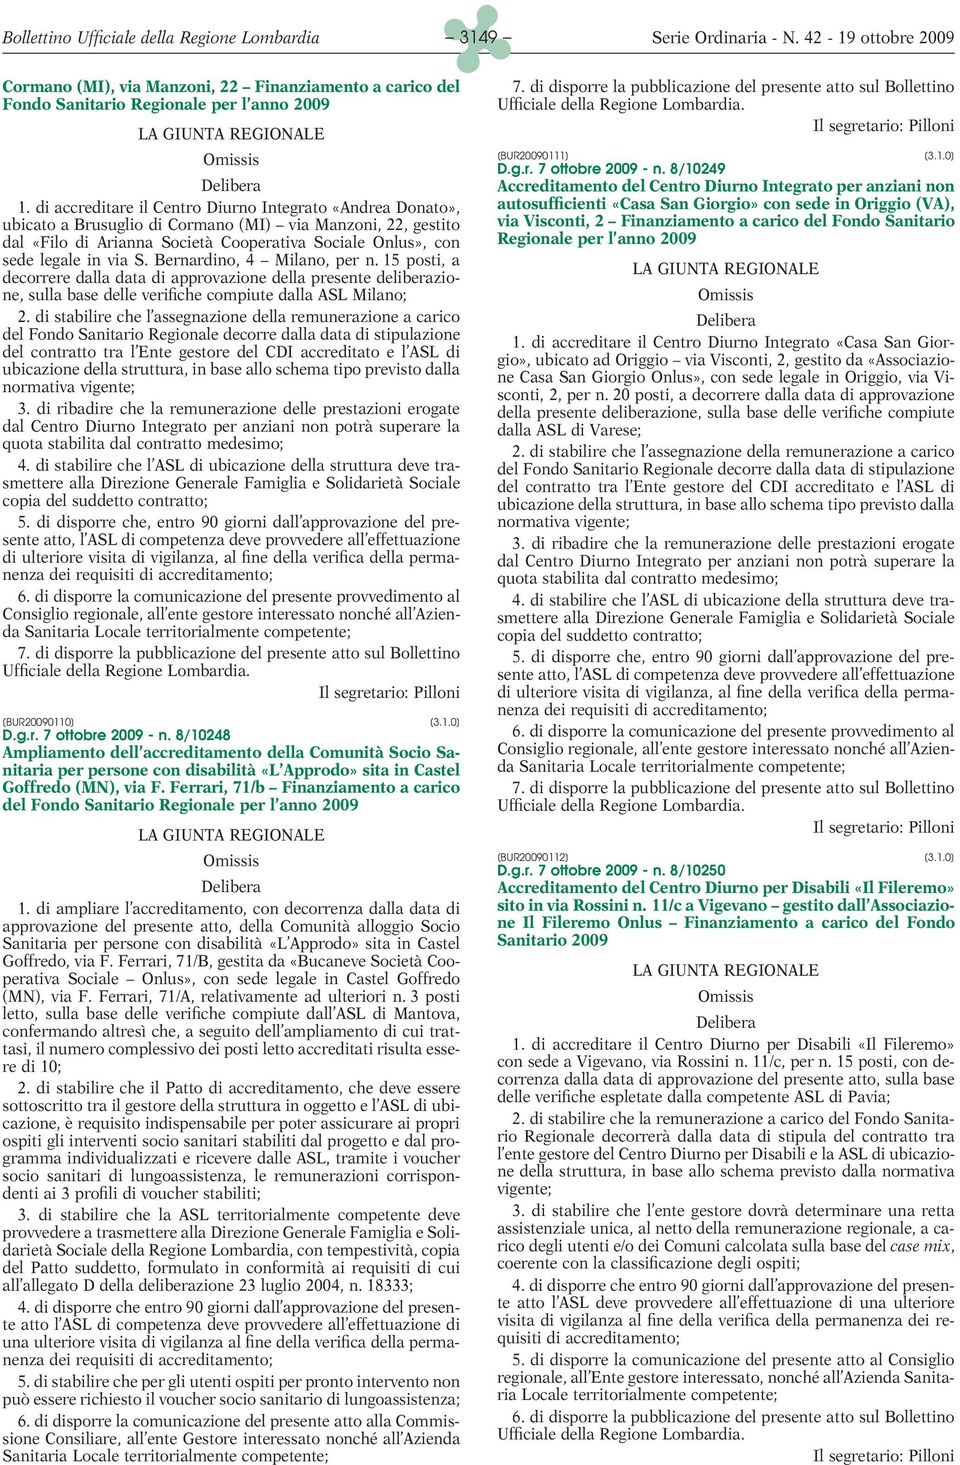 S. Bernardino, 4 Milano, per n. 15 posti, a decorrere dalla data di approvazione della presente deliberazione, sulla base delle verifiche compiute dalla ASL Milano; 2.